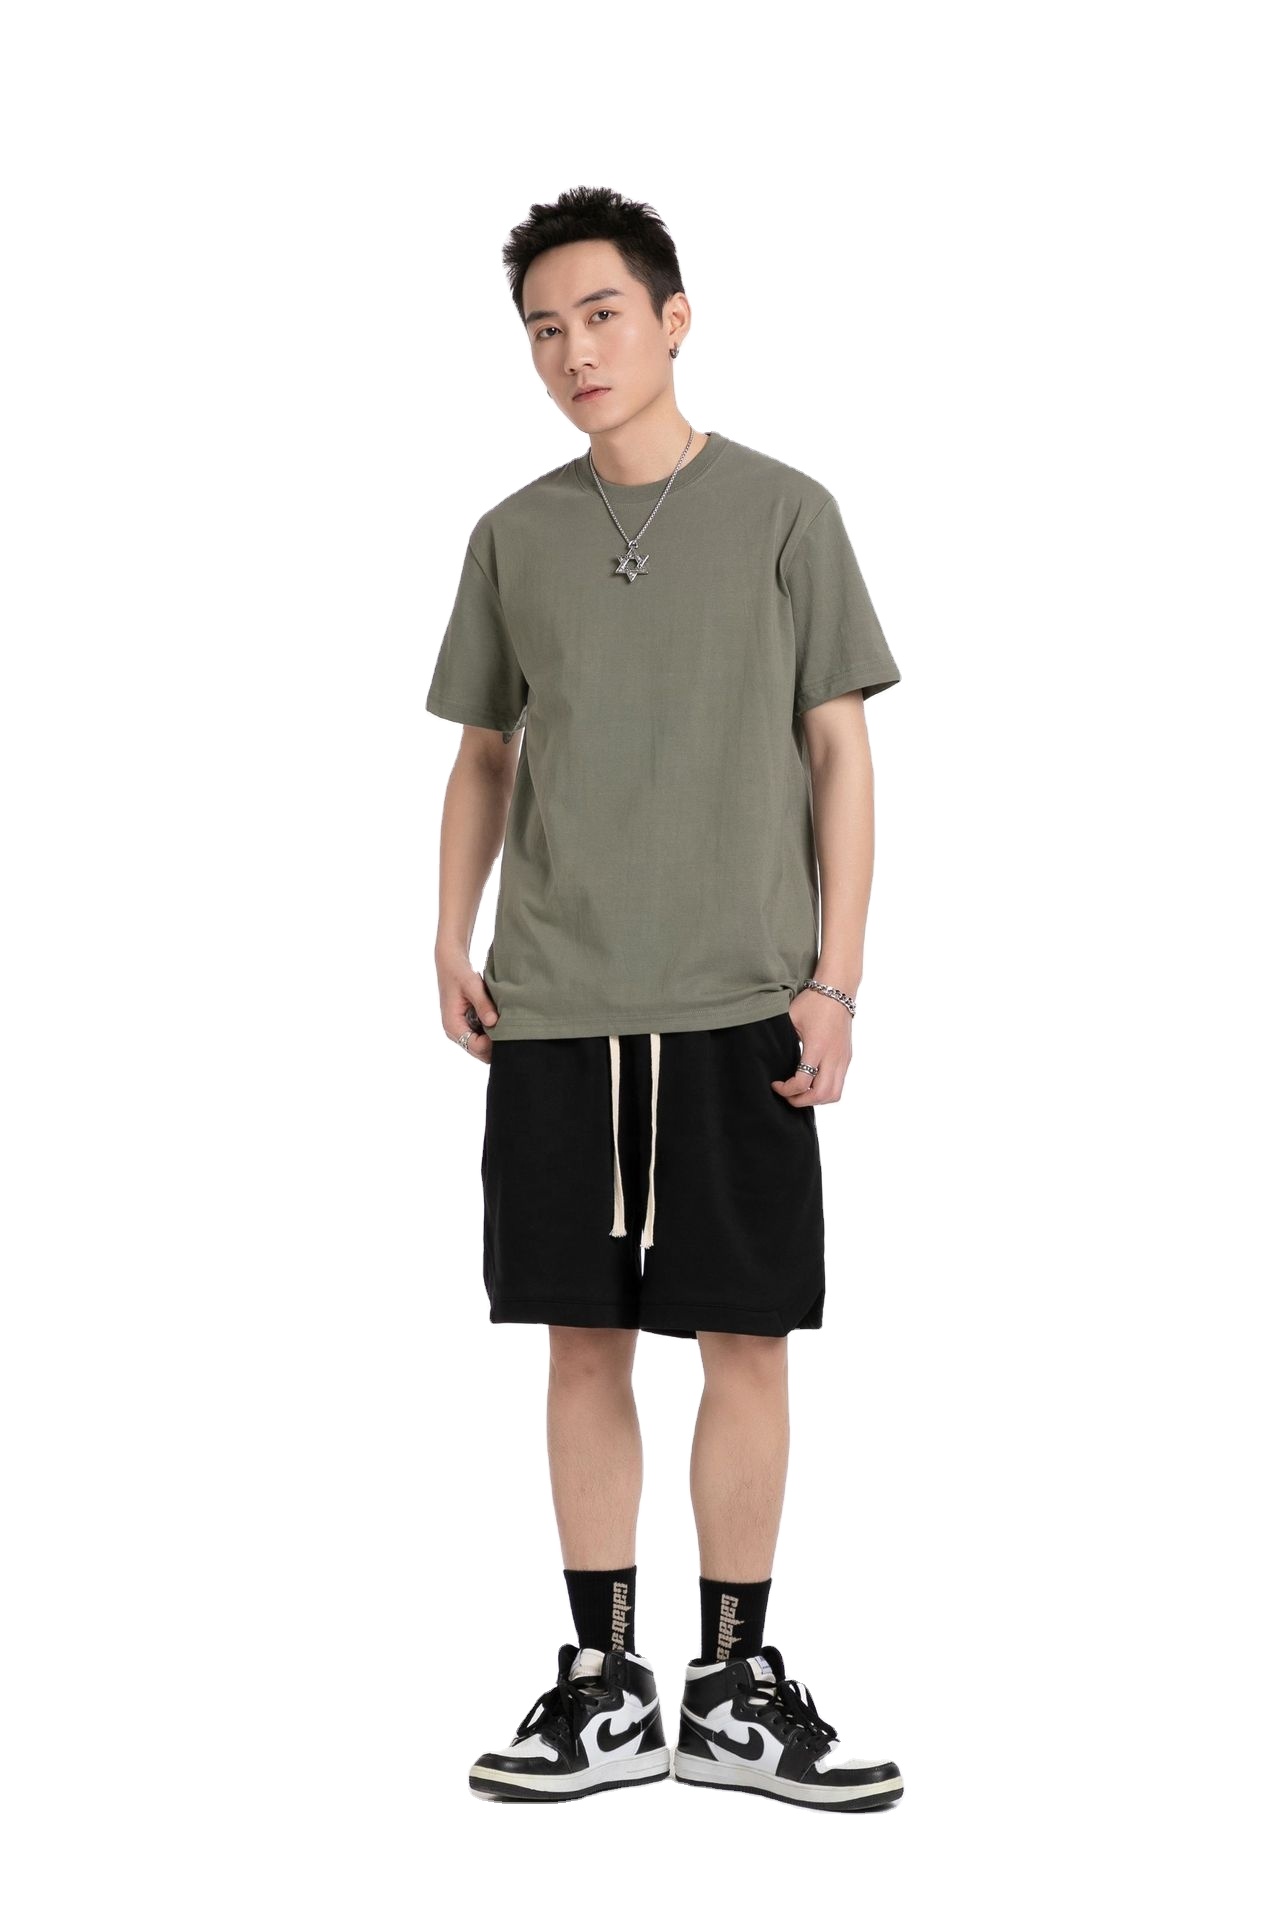 US Size 220gsm 100% Cotton High Quality Custom Logo Plain T Shirt Drop Shoulder Oversized Plus Size Men's T-shirts